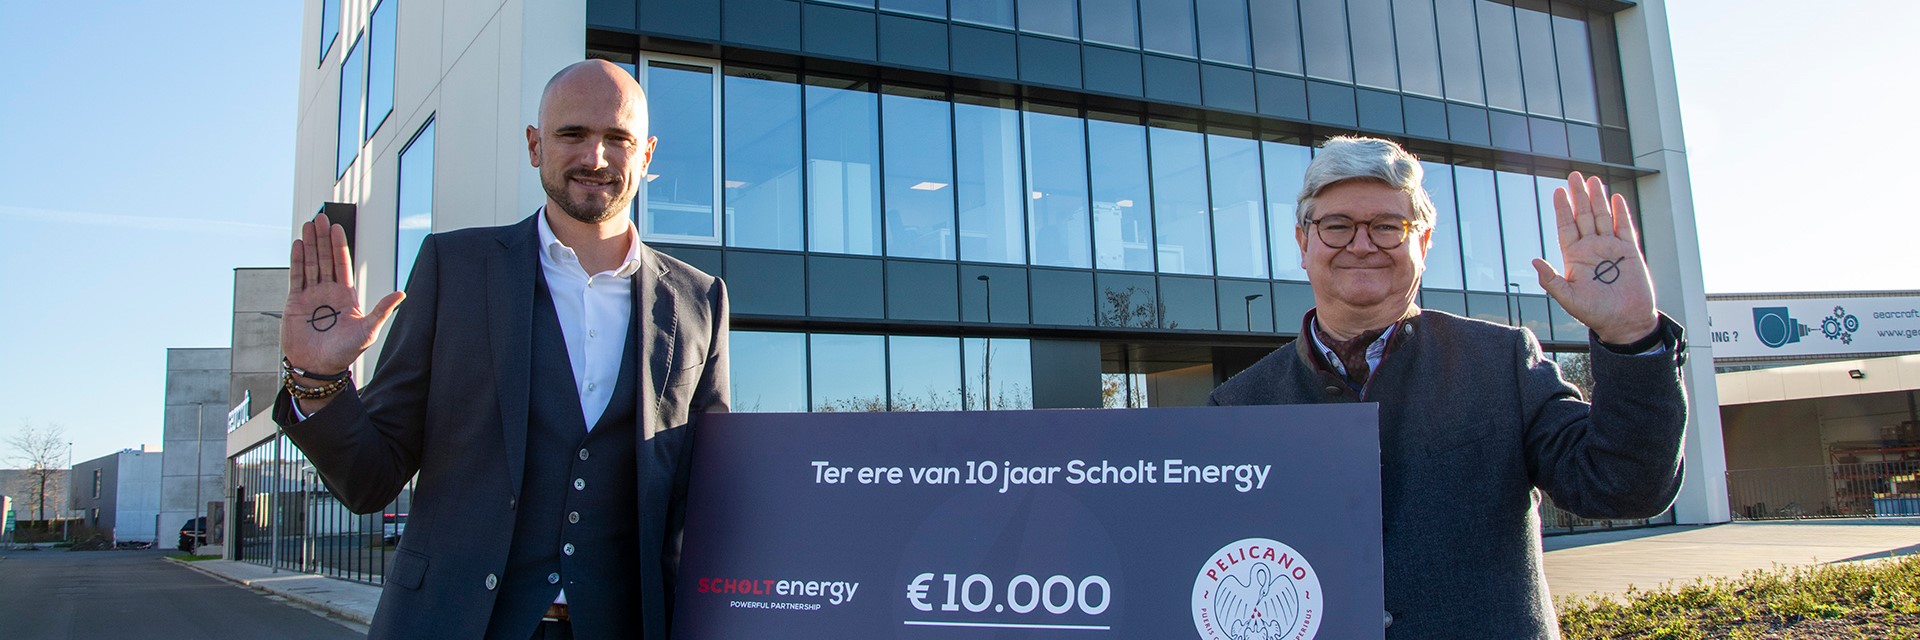 Scholt Energy Donatie V1